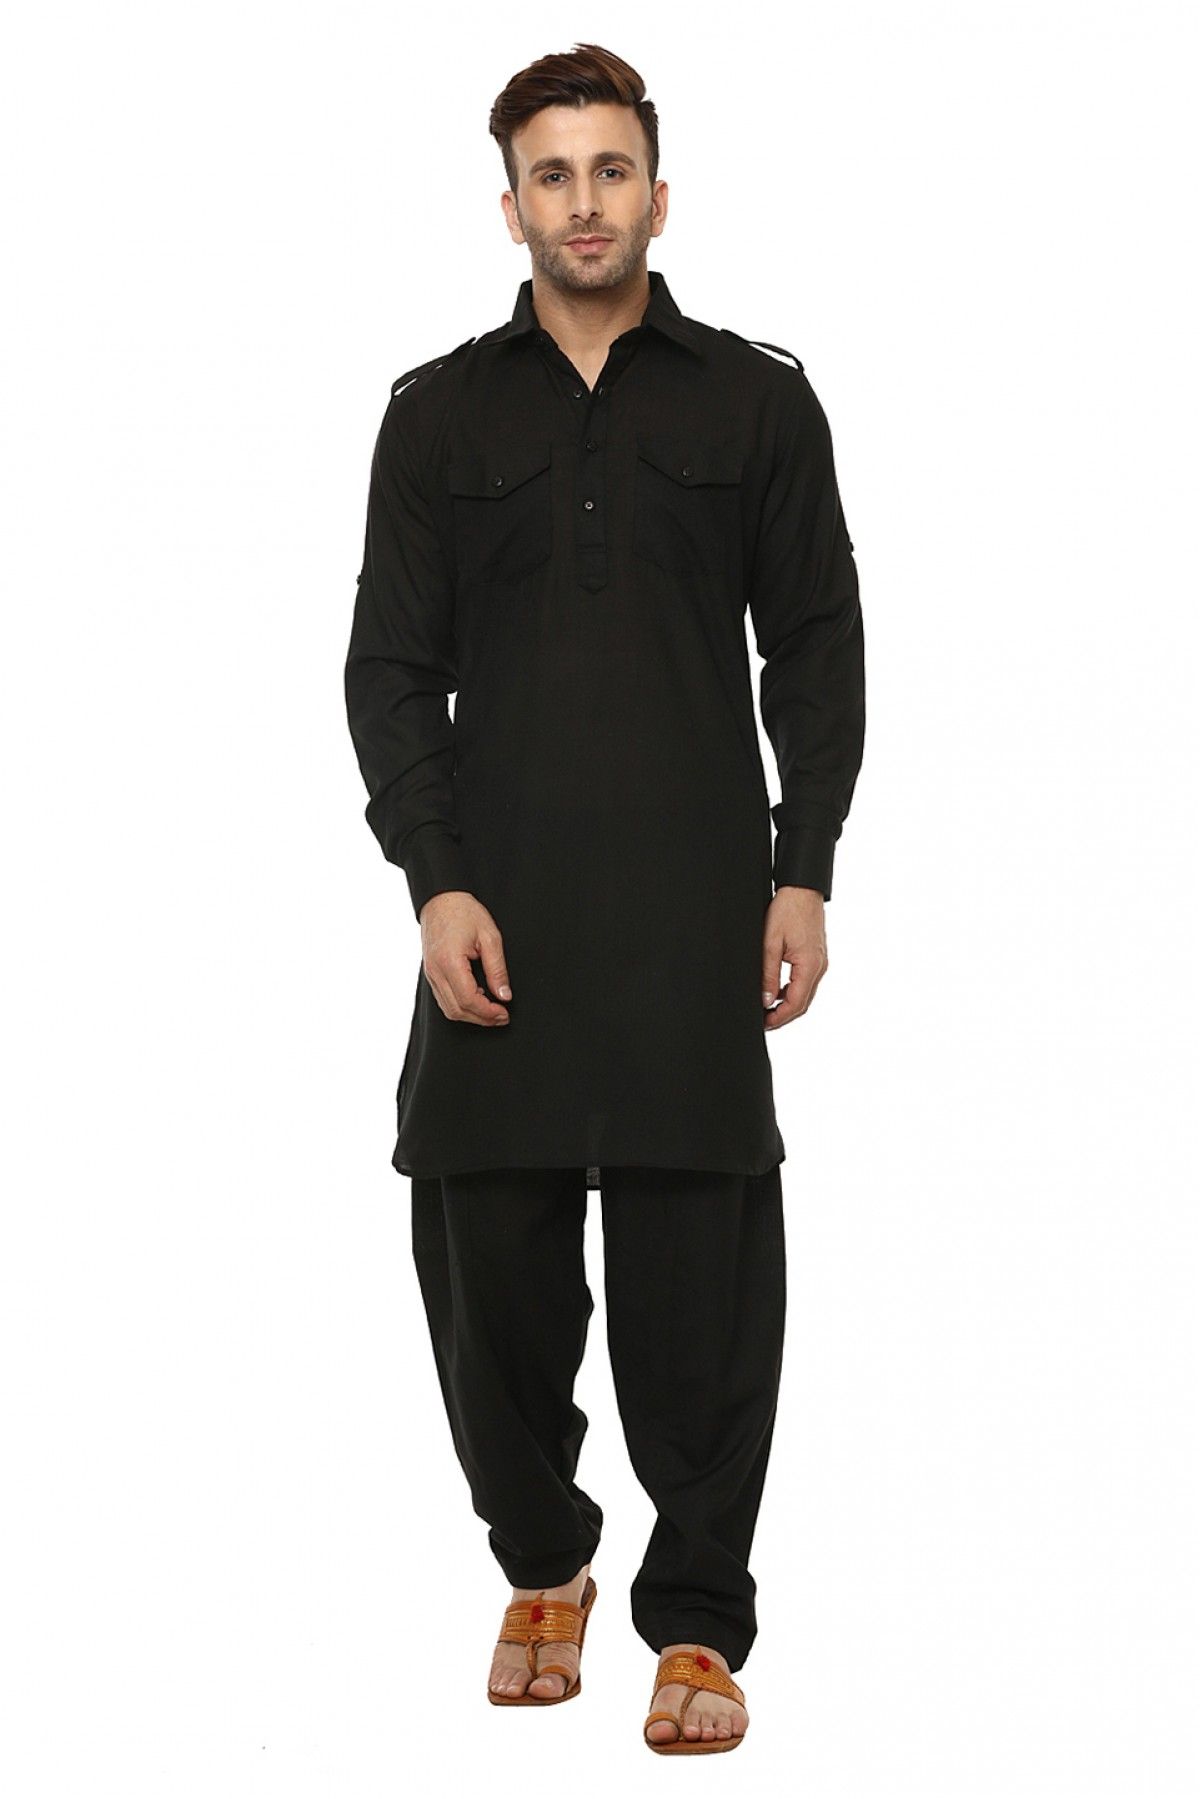 Fancy Pattern Fancy Fabric Grey With Black Pathani Suit/Kurta - Zakarto